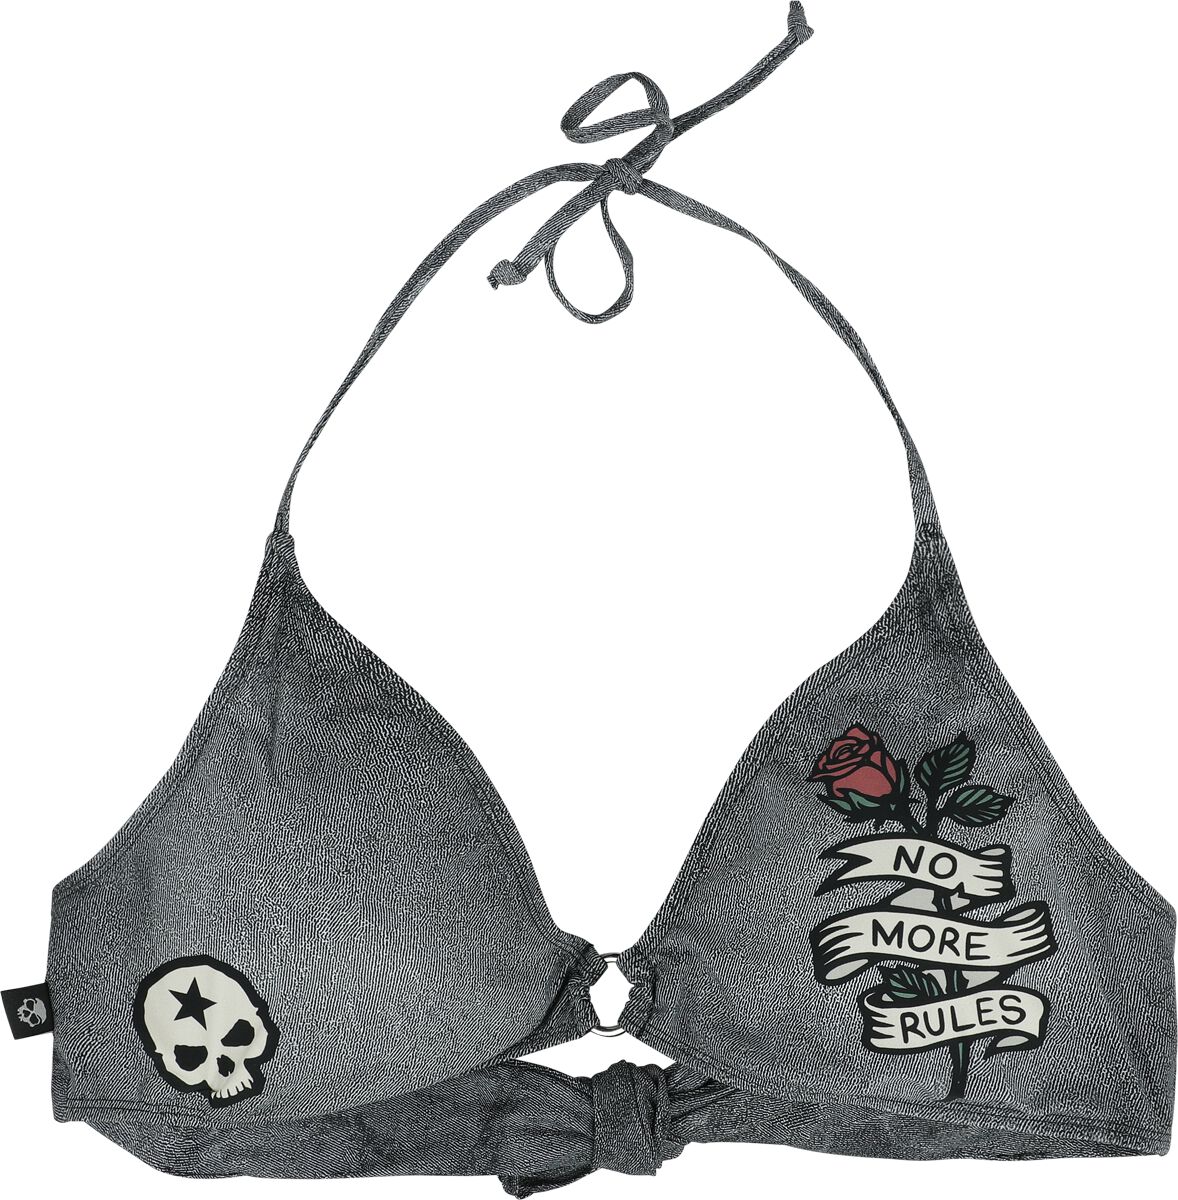 Image of Reggiseno bikini di Rock Rebel by EMP - Bikini Top With Old School Prints - S a XXL - Donna - grigio scuro/nero